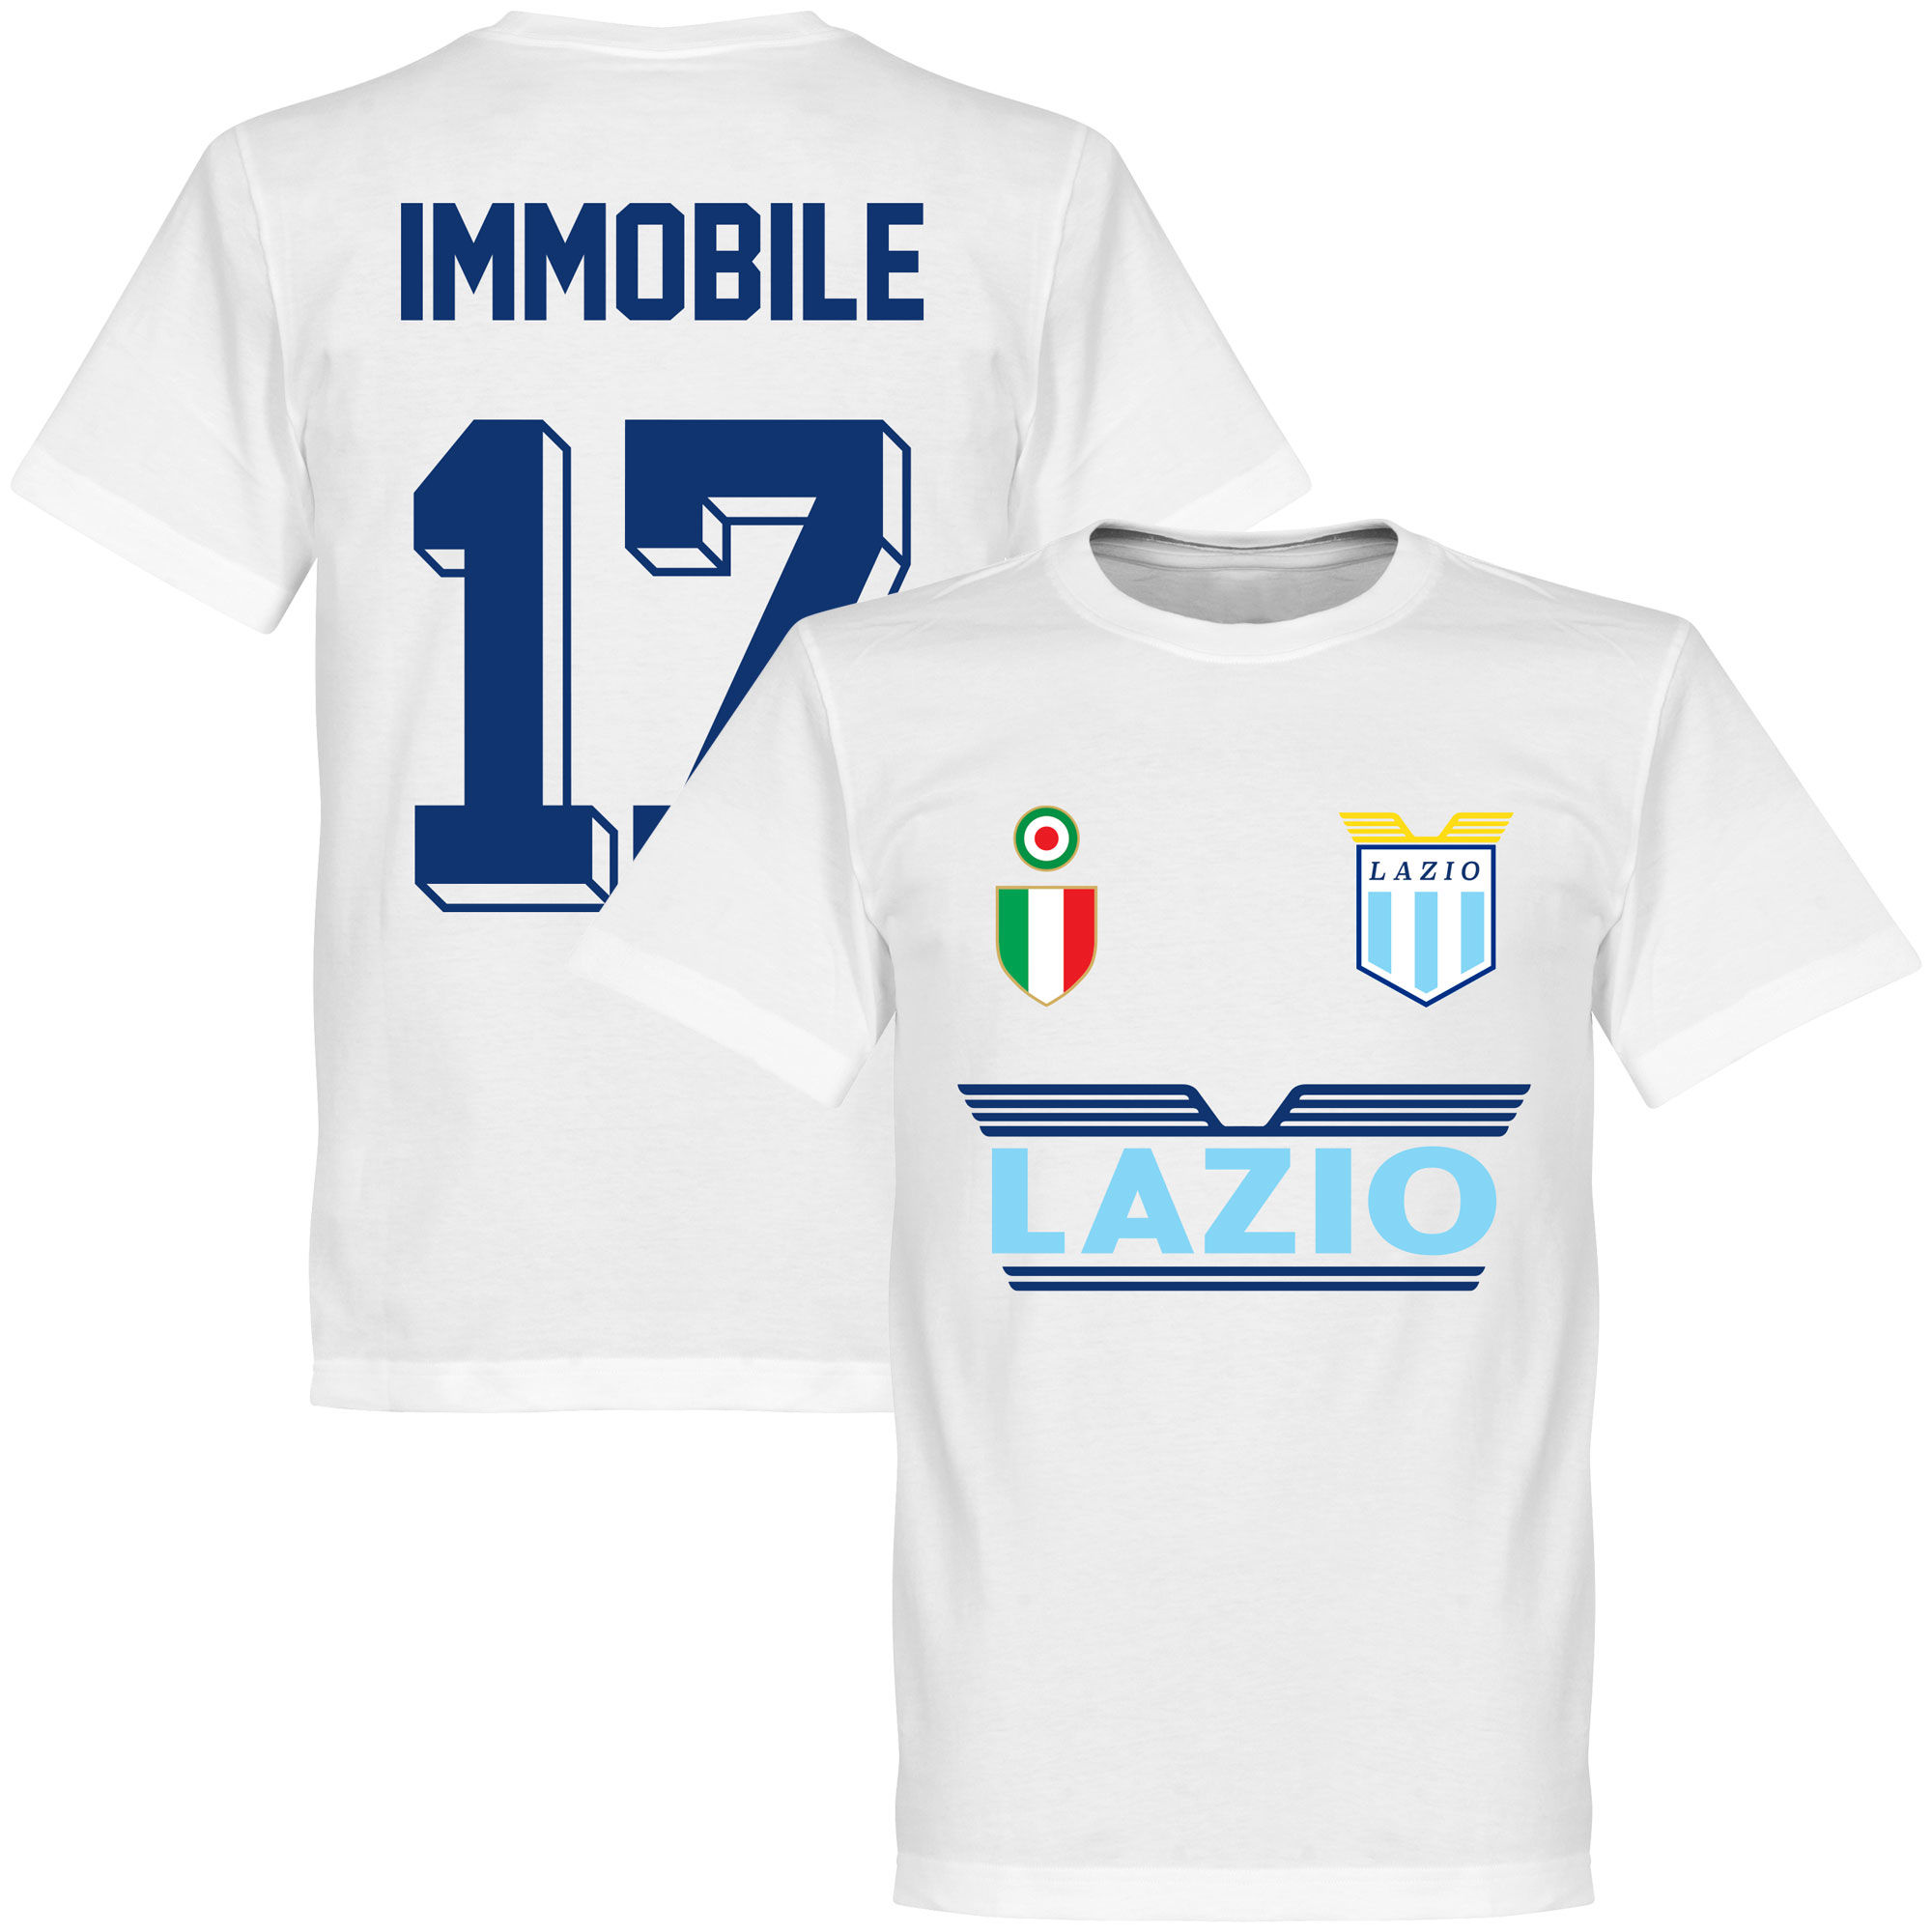 SS Lazio - Tričko - číslo 17, Ciro Immobile, bílé